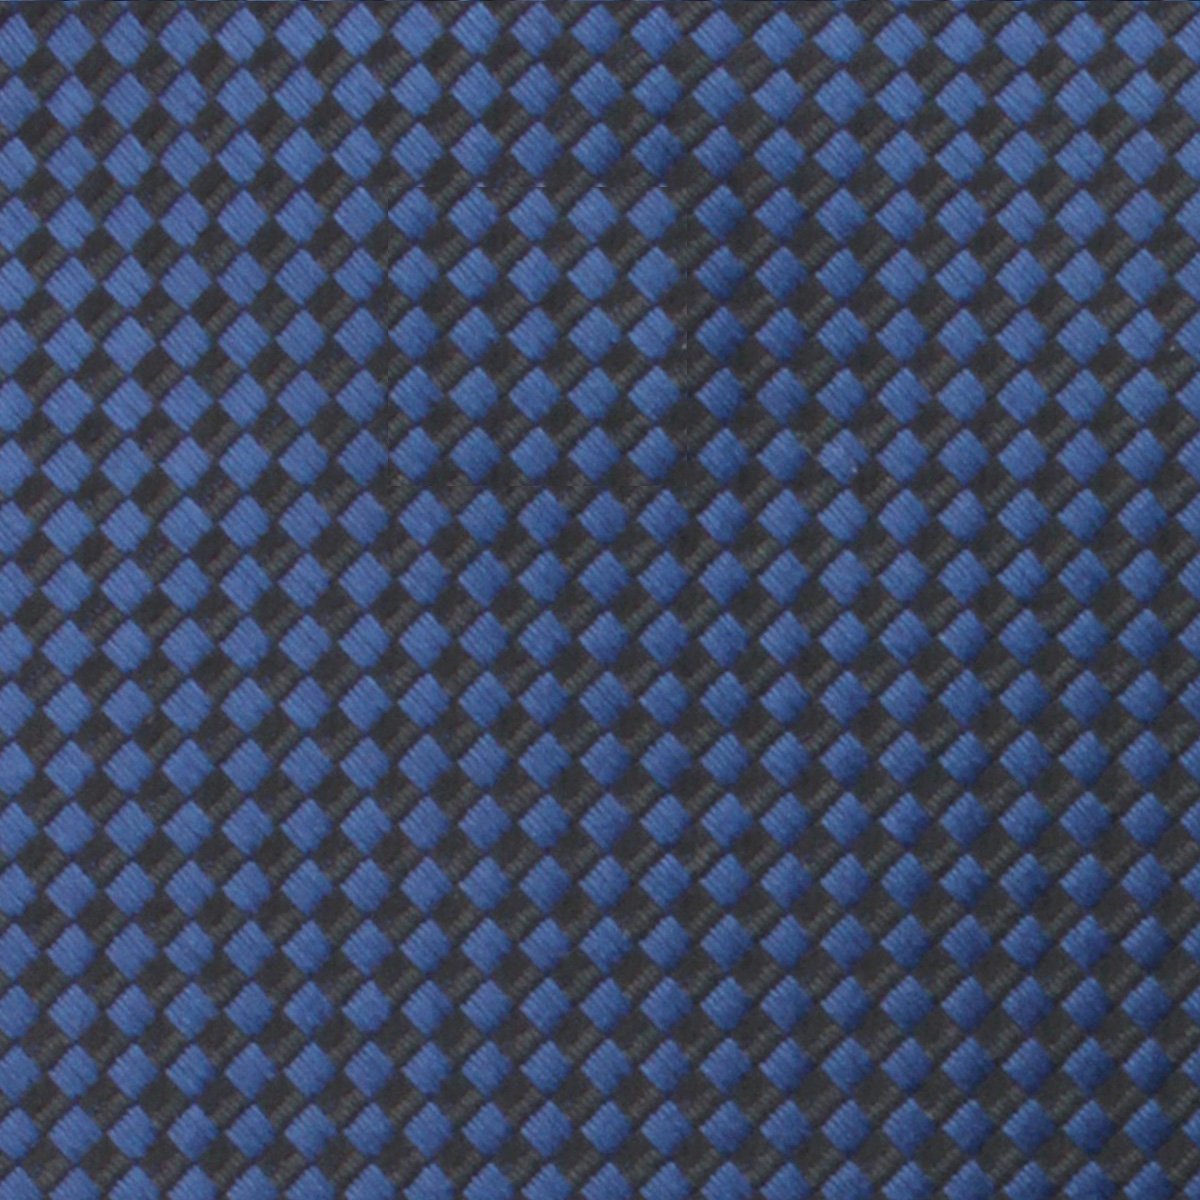 Navy Blue Basket Weave Checkered Necktie Fabric